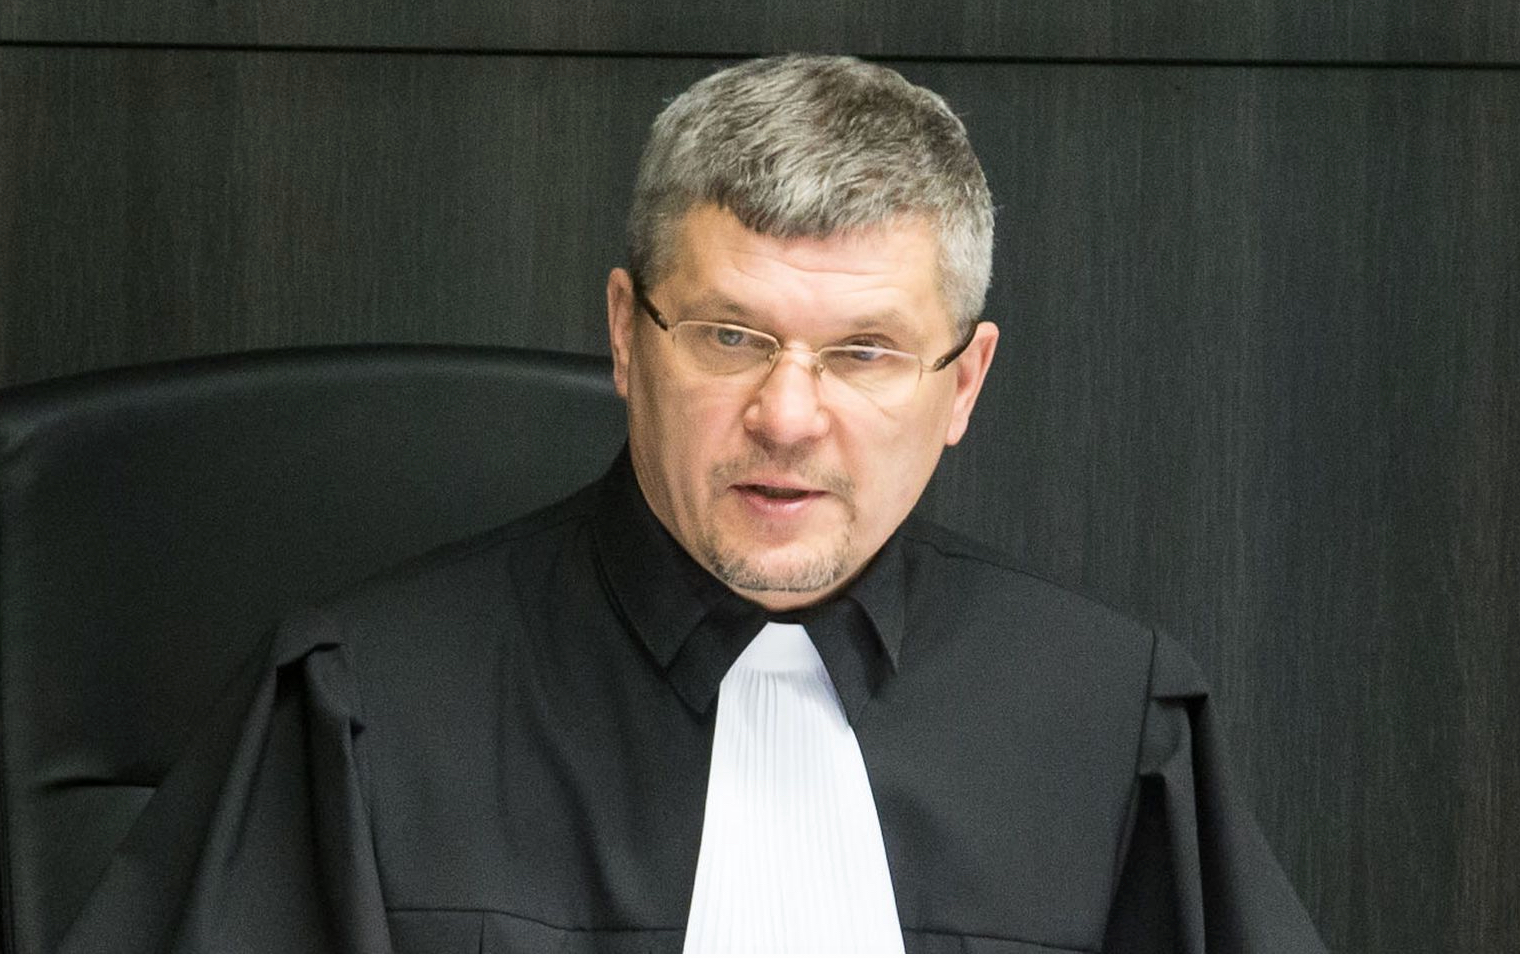 Korrumpeerunud avalik teenistuja Olev Mihkelson tuleb tagandada ametist, eirab süütuse presumptsiooni ja põhiseadust￼